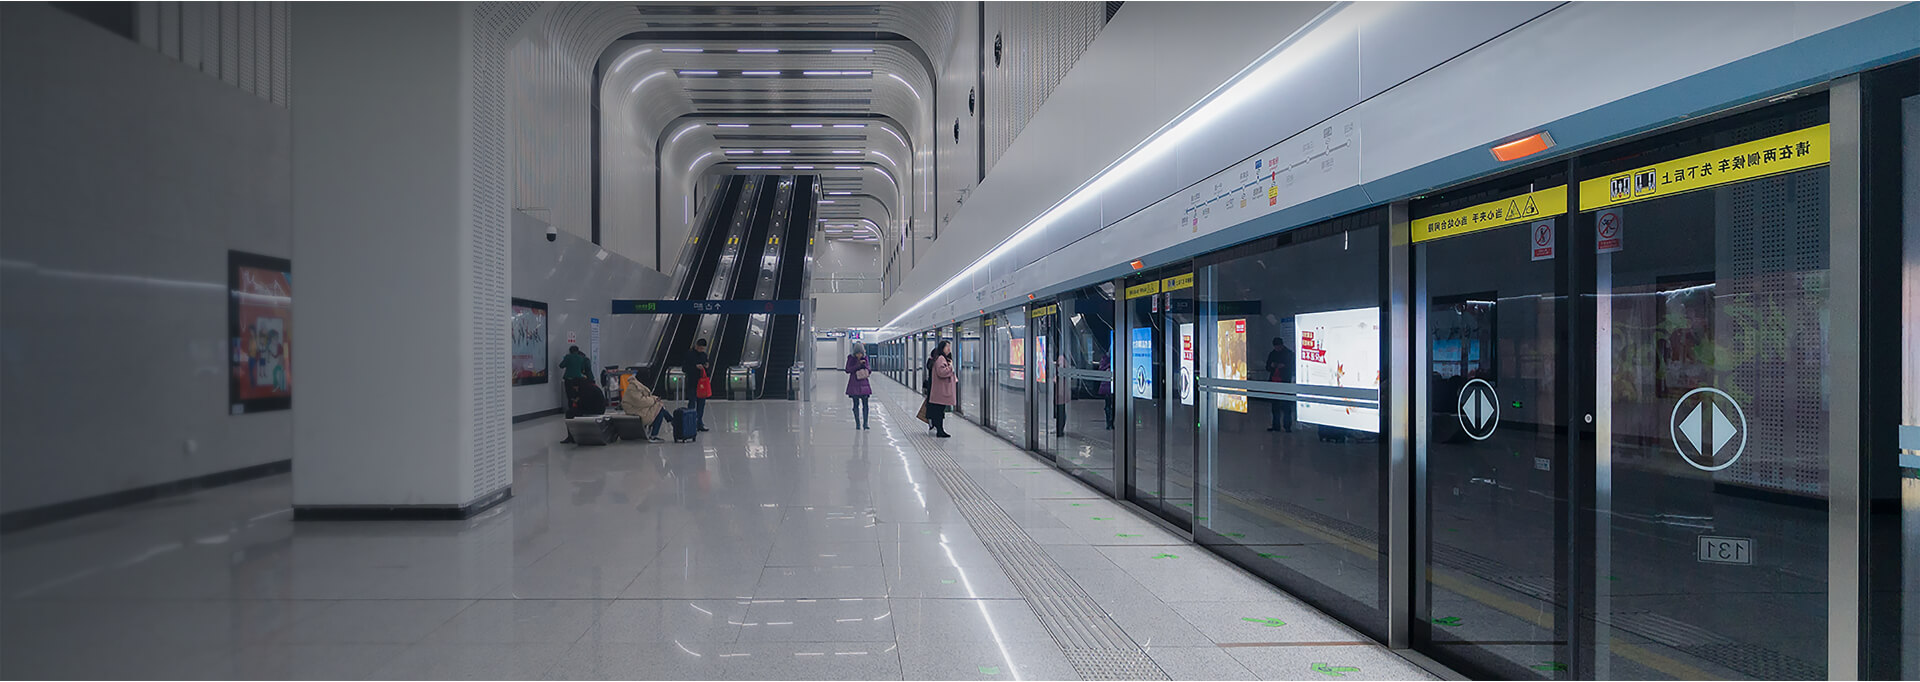 地铁站3D室内导航系统